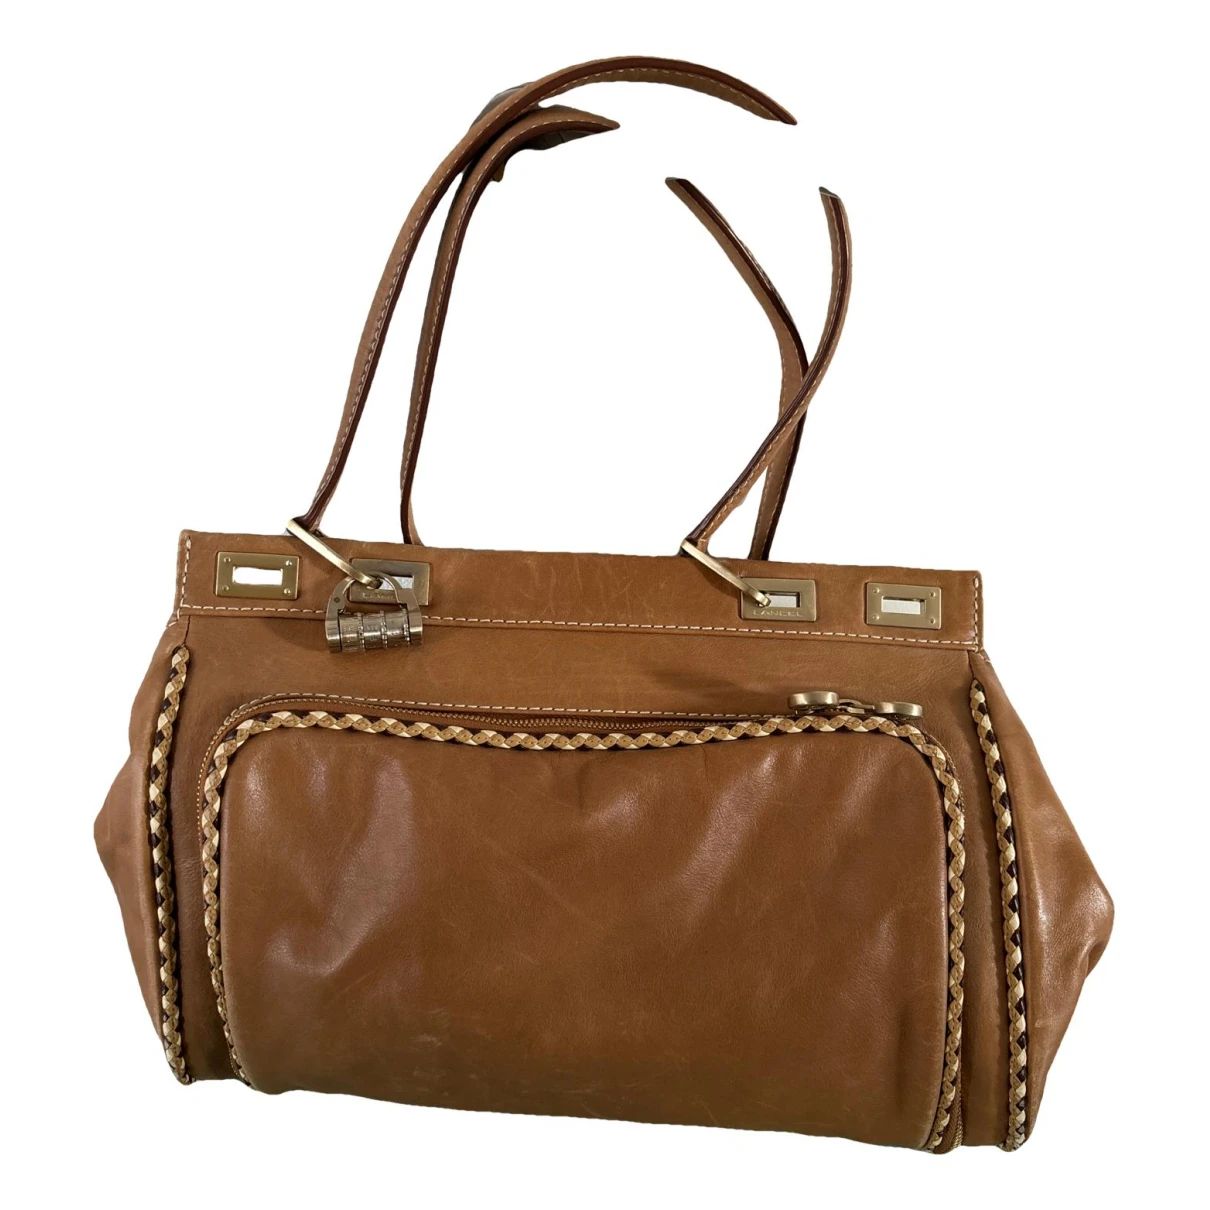 Pre-owned Lancel Leather Handbag In Camel